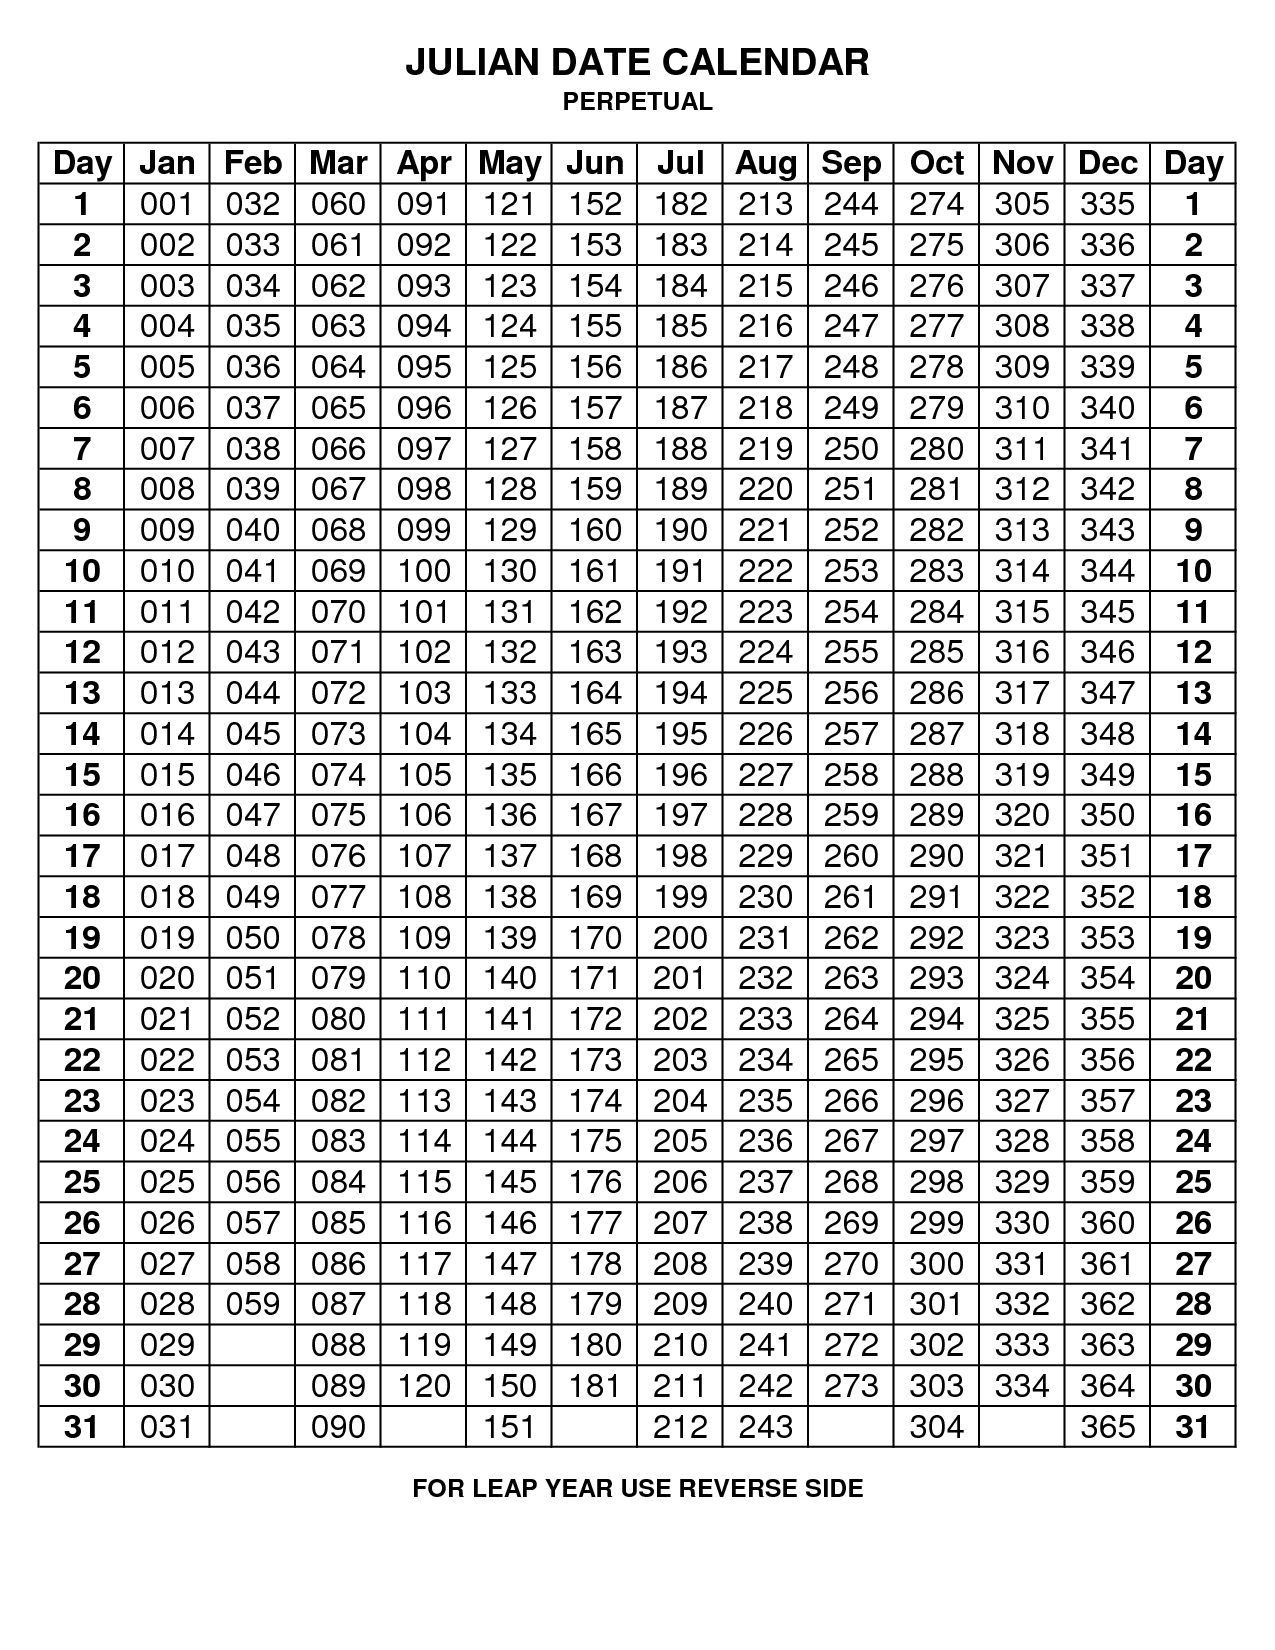 2020 Julian Calendar Non Leap Year | Example Calendar Printable regarding Julian Date Calendar For 2020